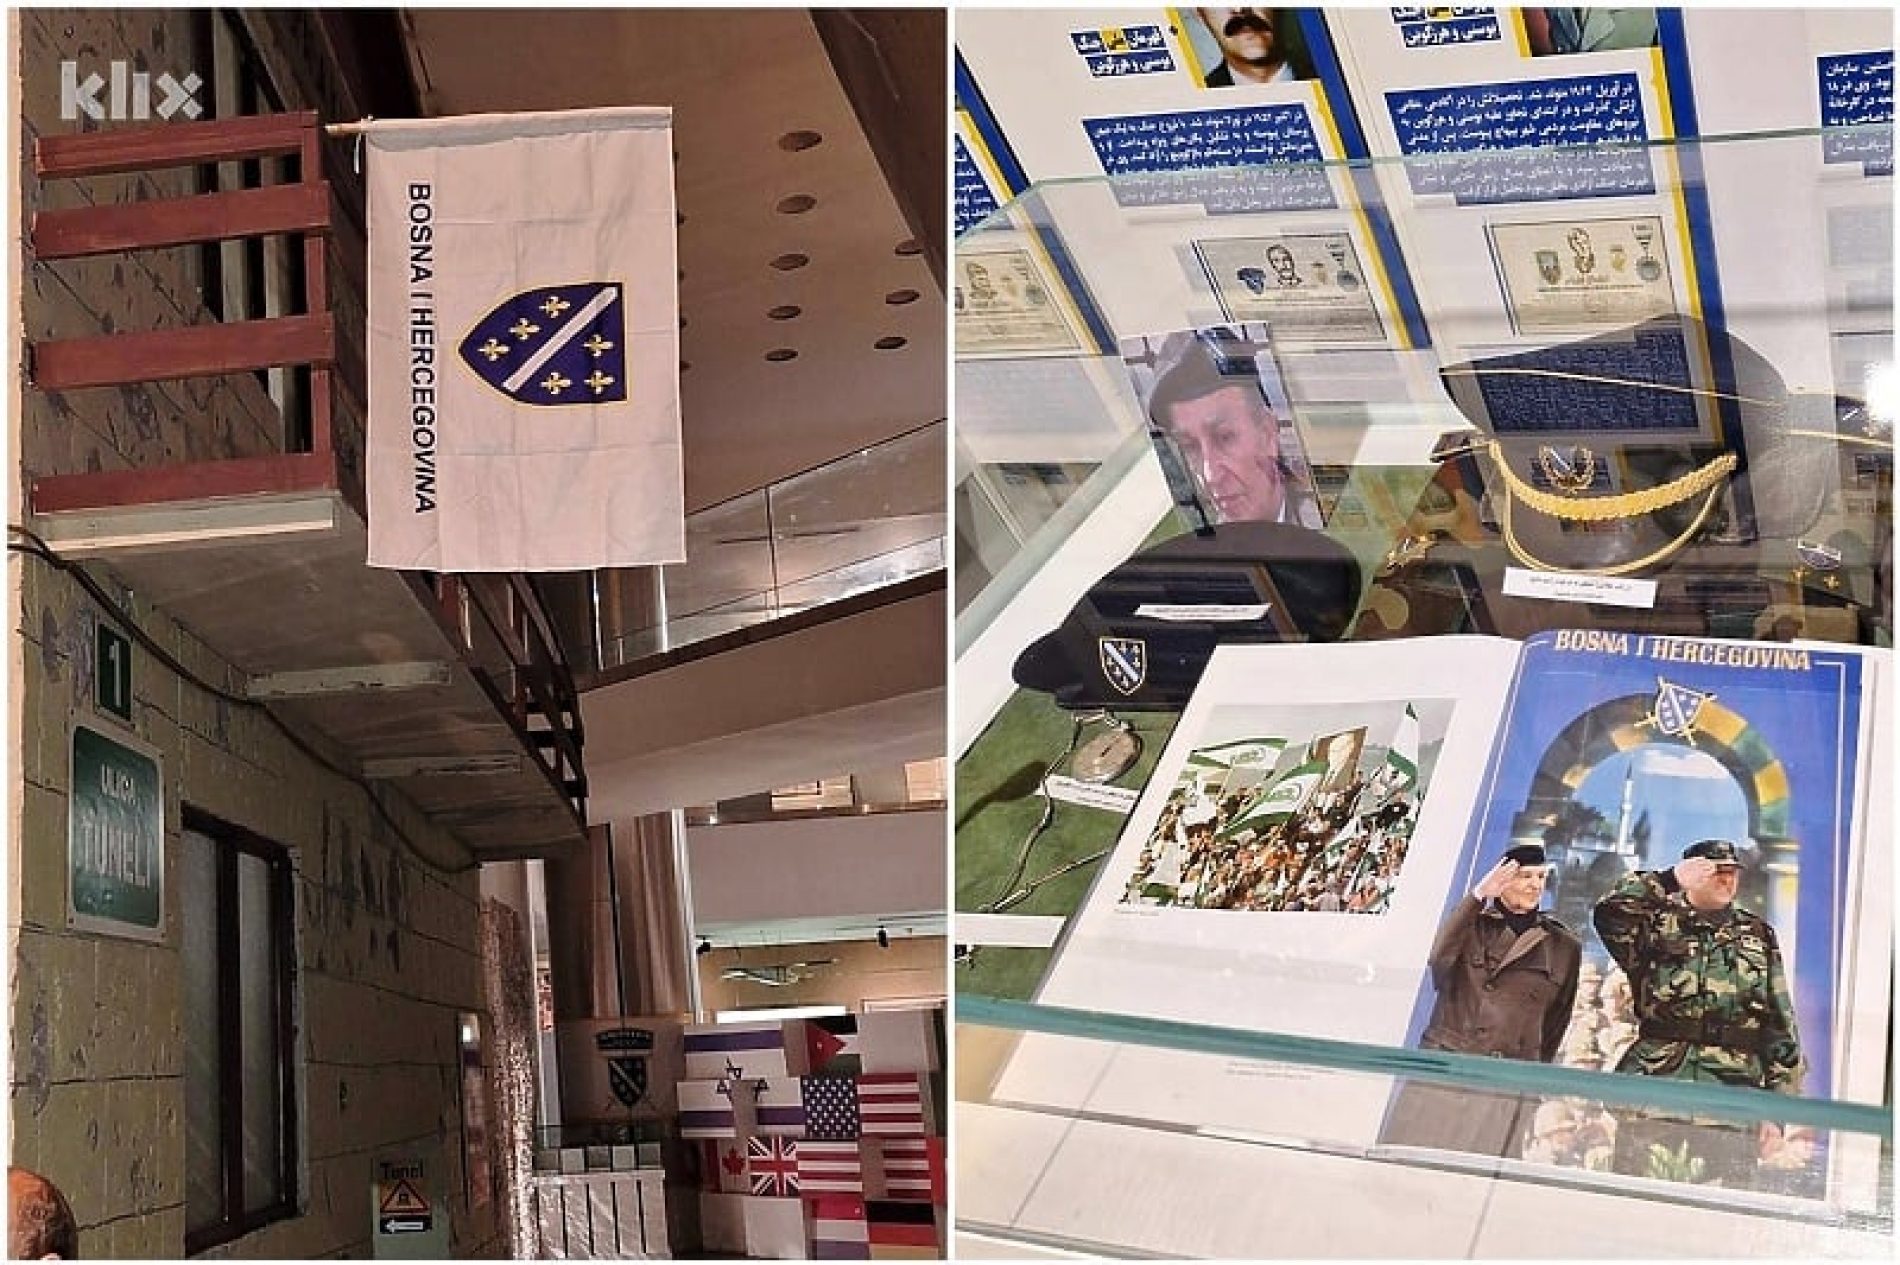 Iranci čuvaju sjećanje na bosanski otpor: U Teheranu postoji muzej posvećen agresiji na Bosnu i Hercegovinu